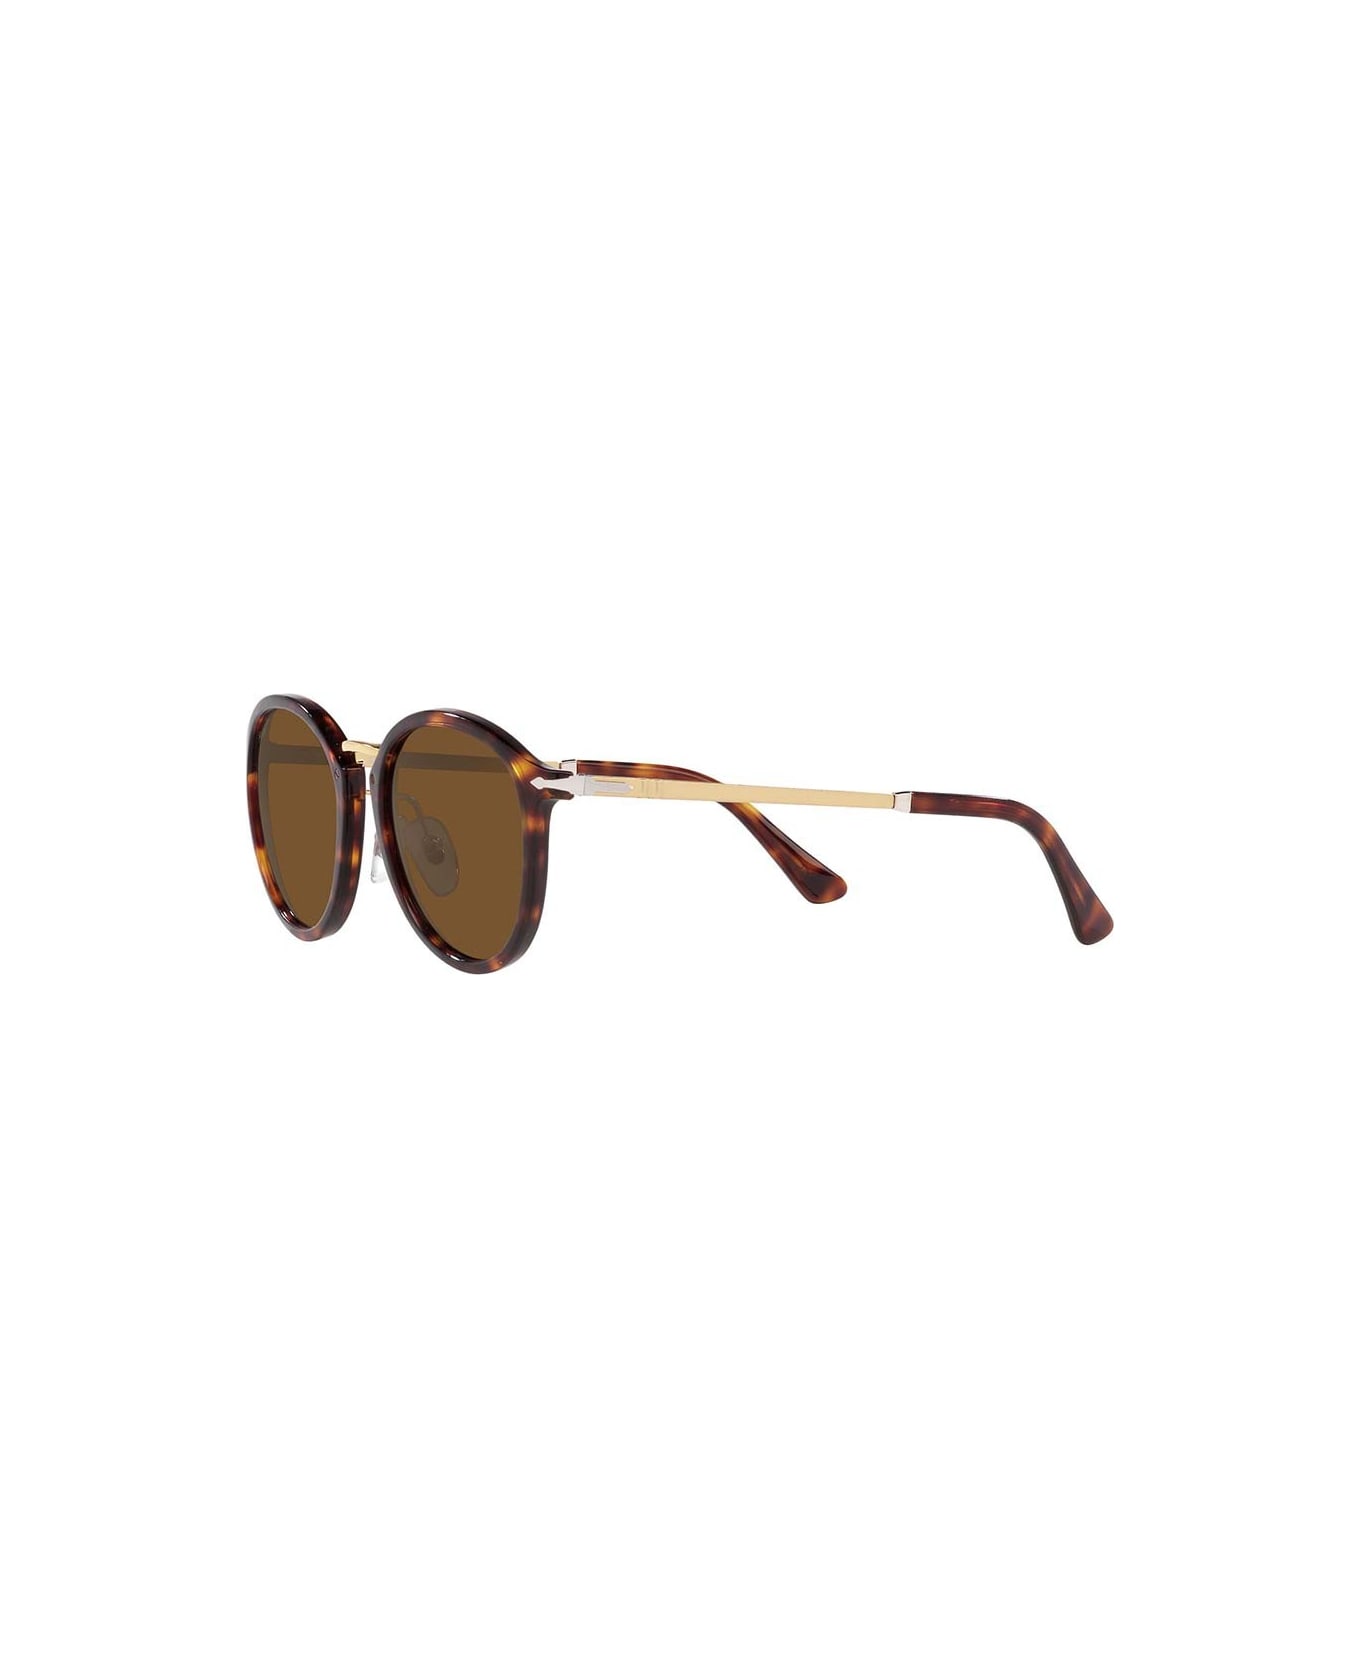 Persol Sunglasses - Marrone/Marrone